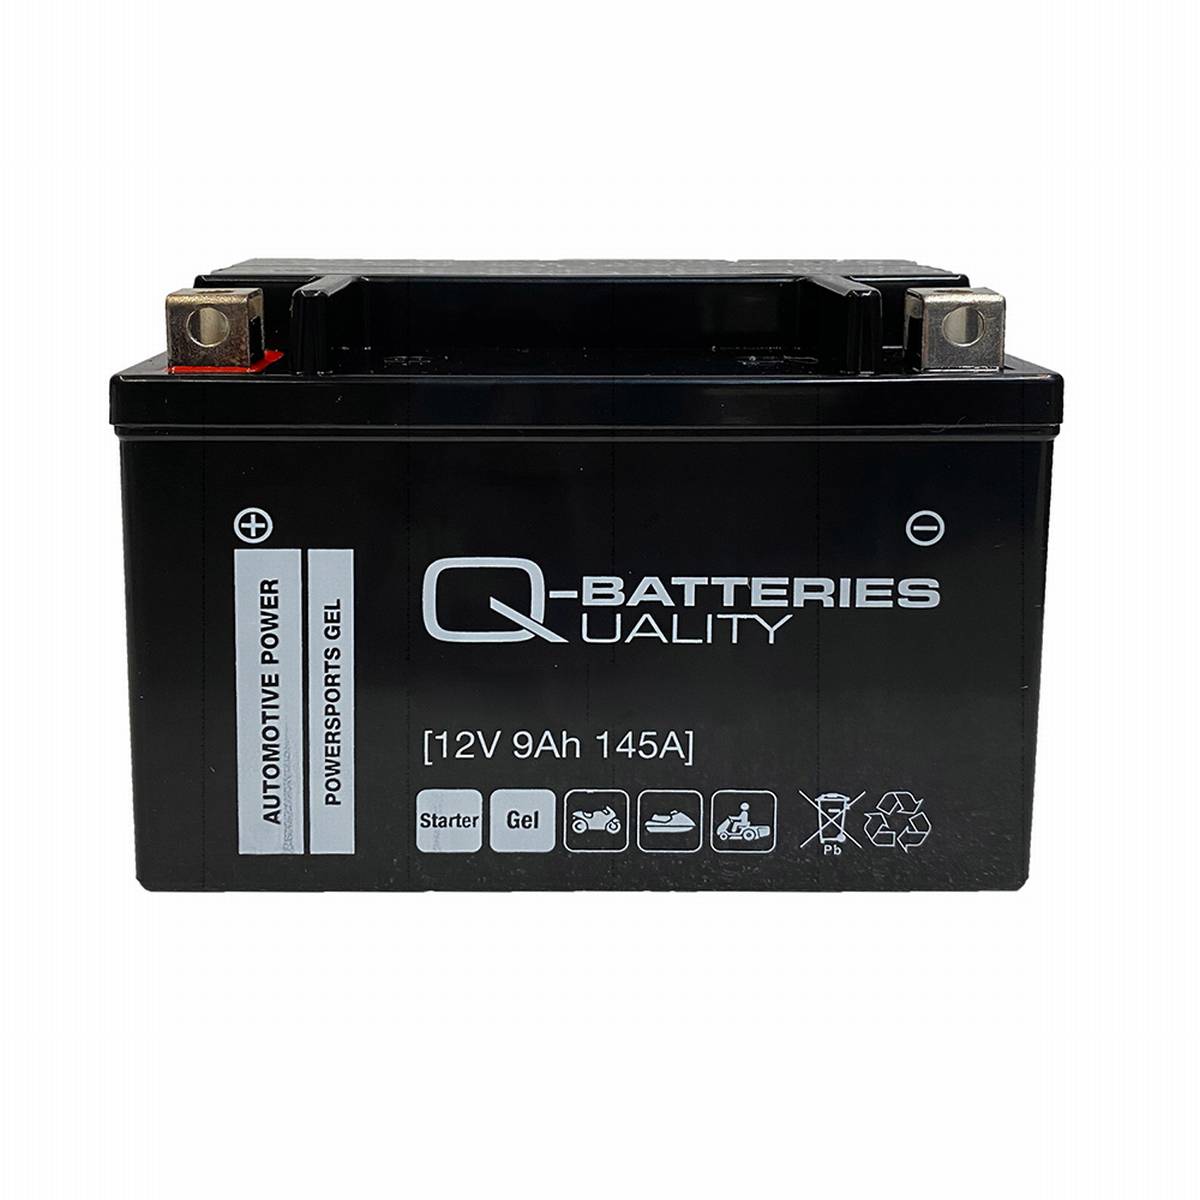 Q-Batteries Motorradbatterie 9-BS Gel 50812 12V 9Ah 145A